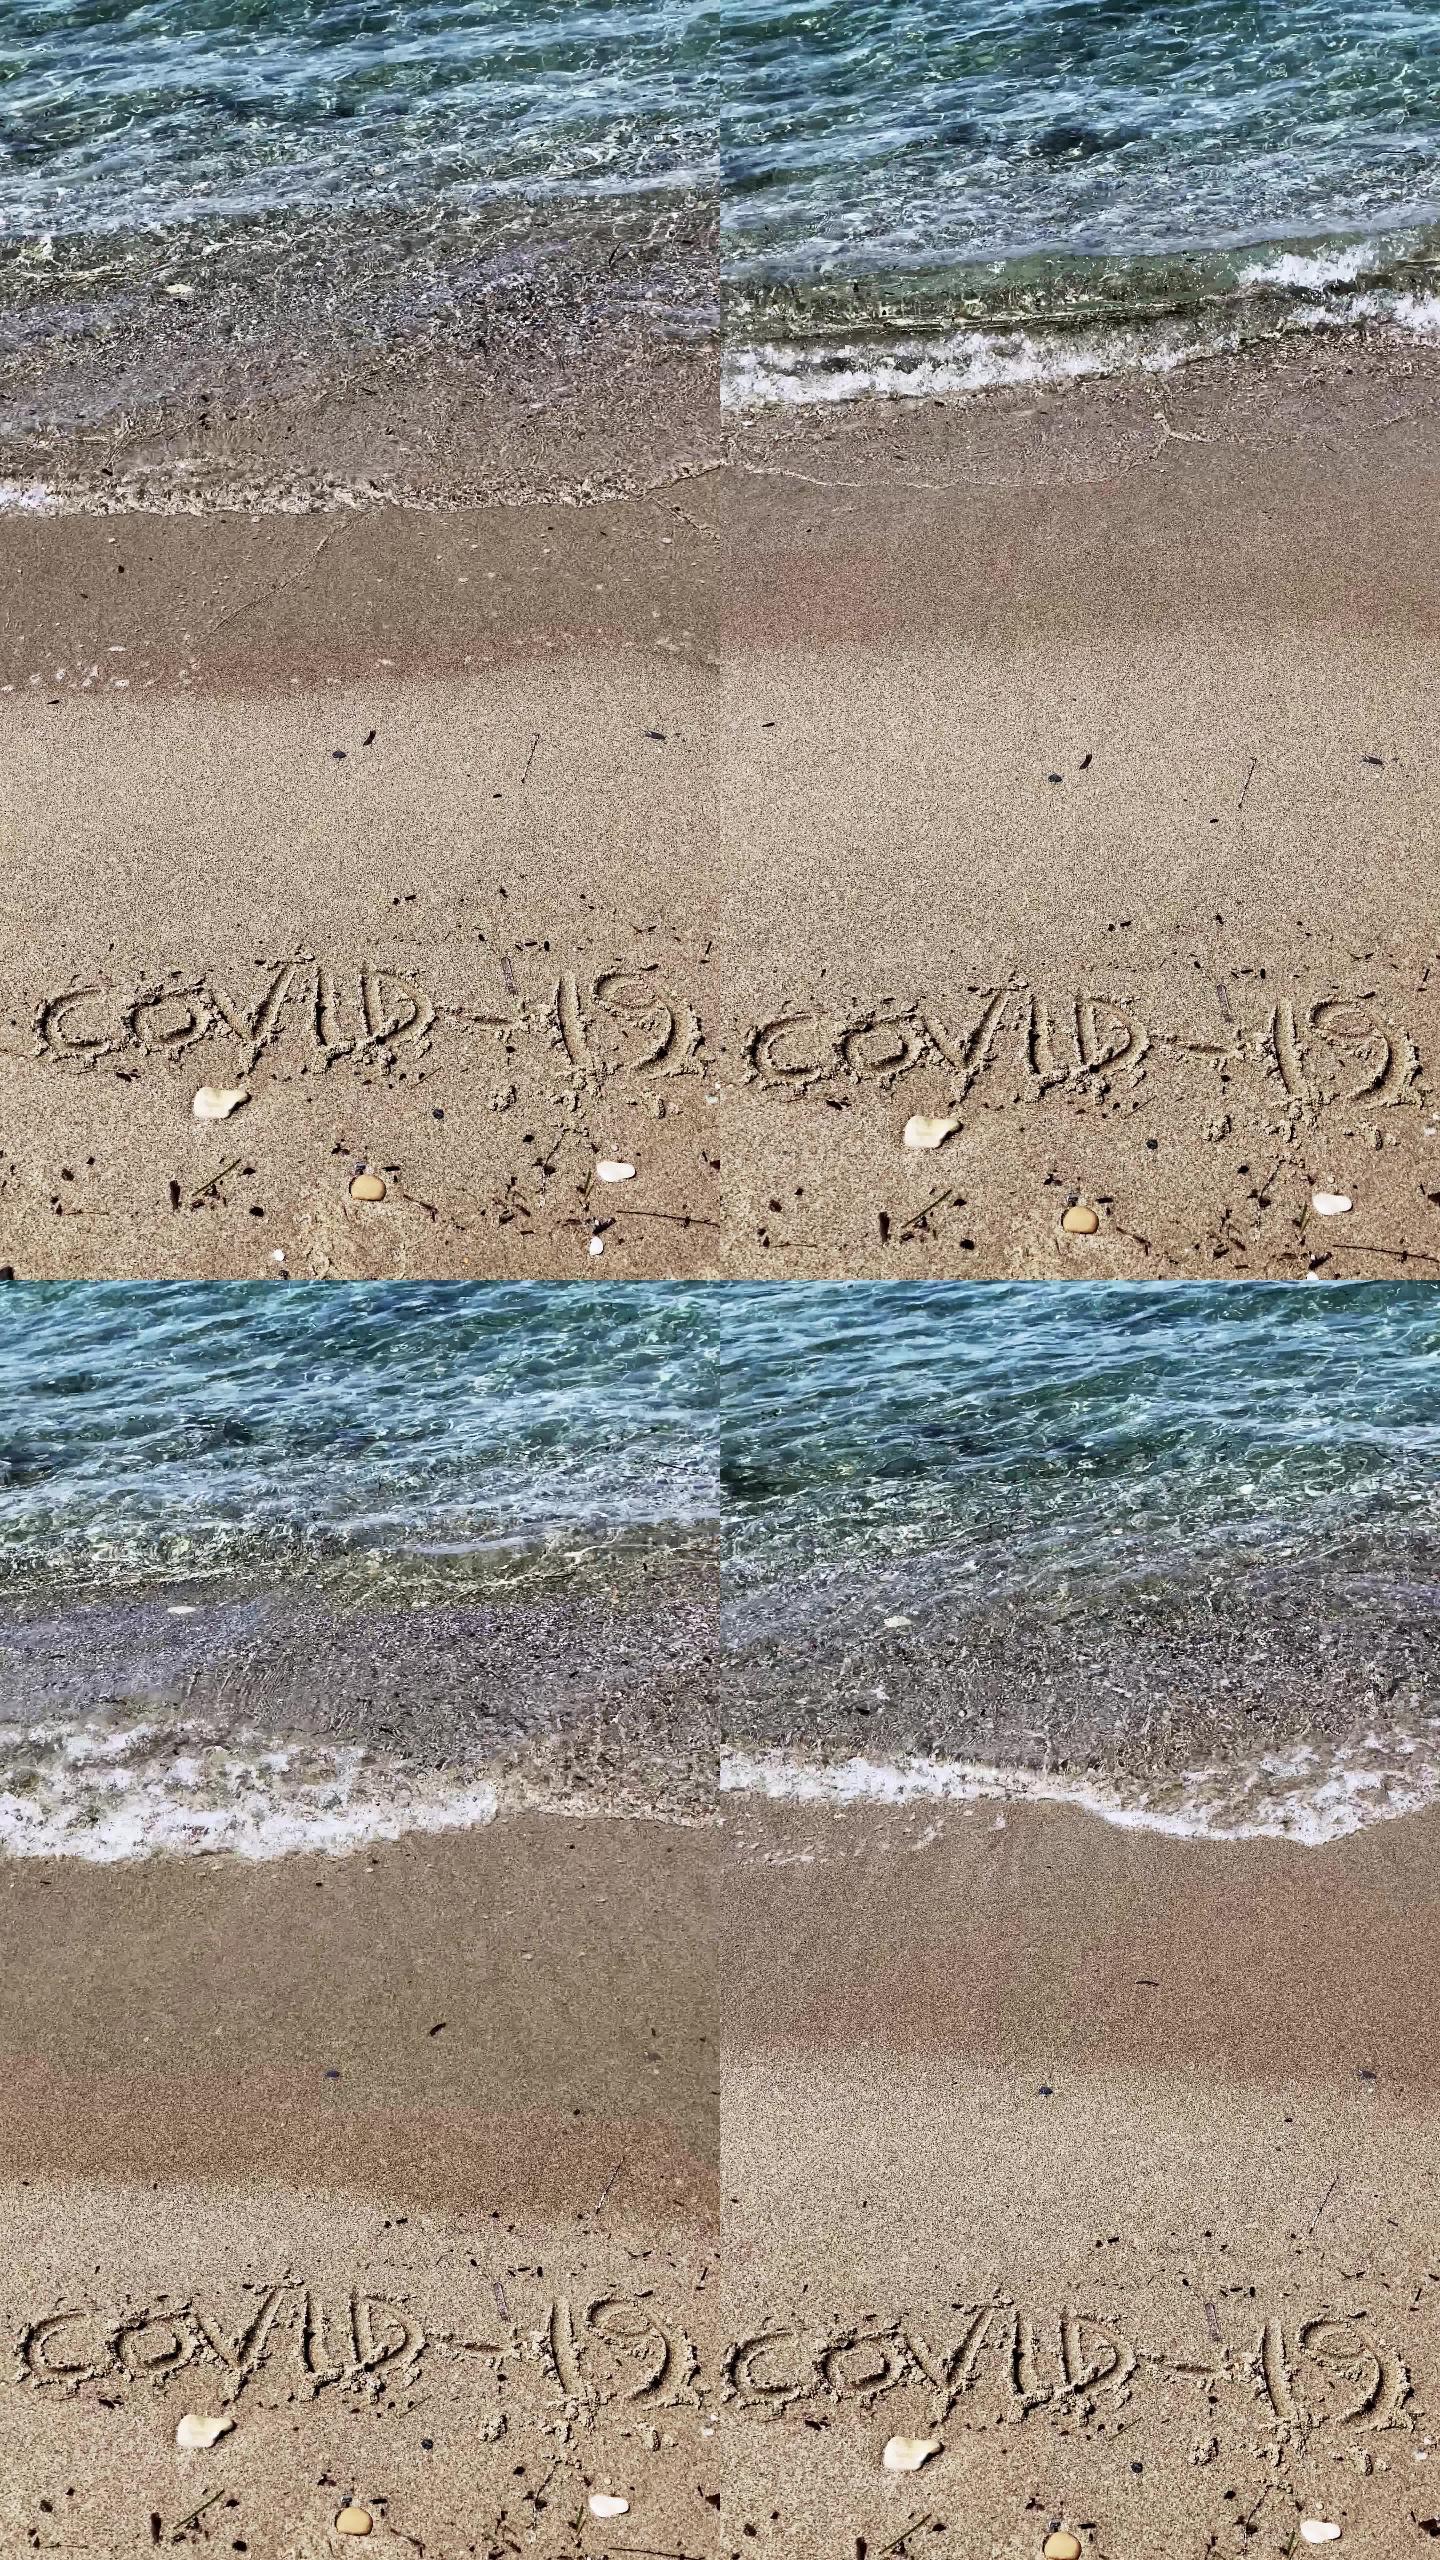 新冠病毒书写笔迹被海浪淹没。